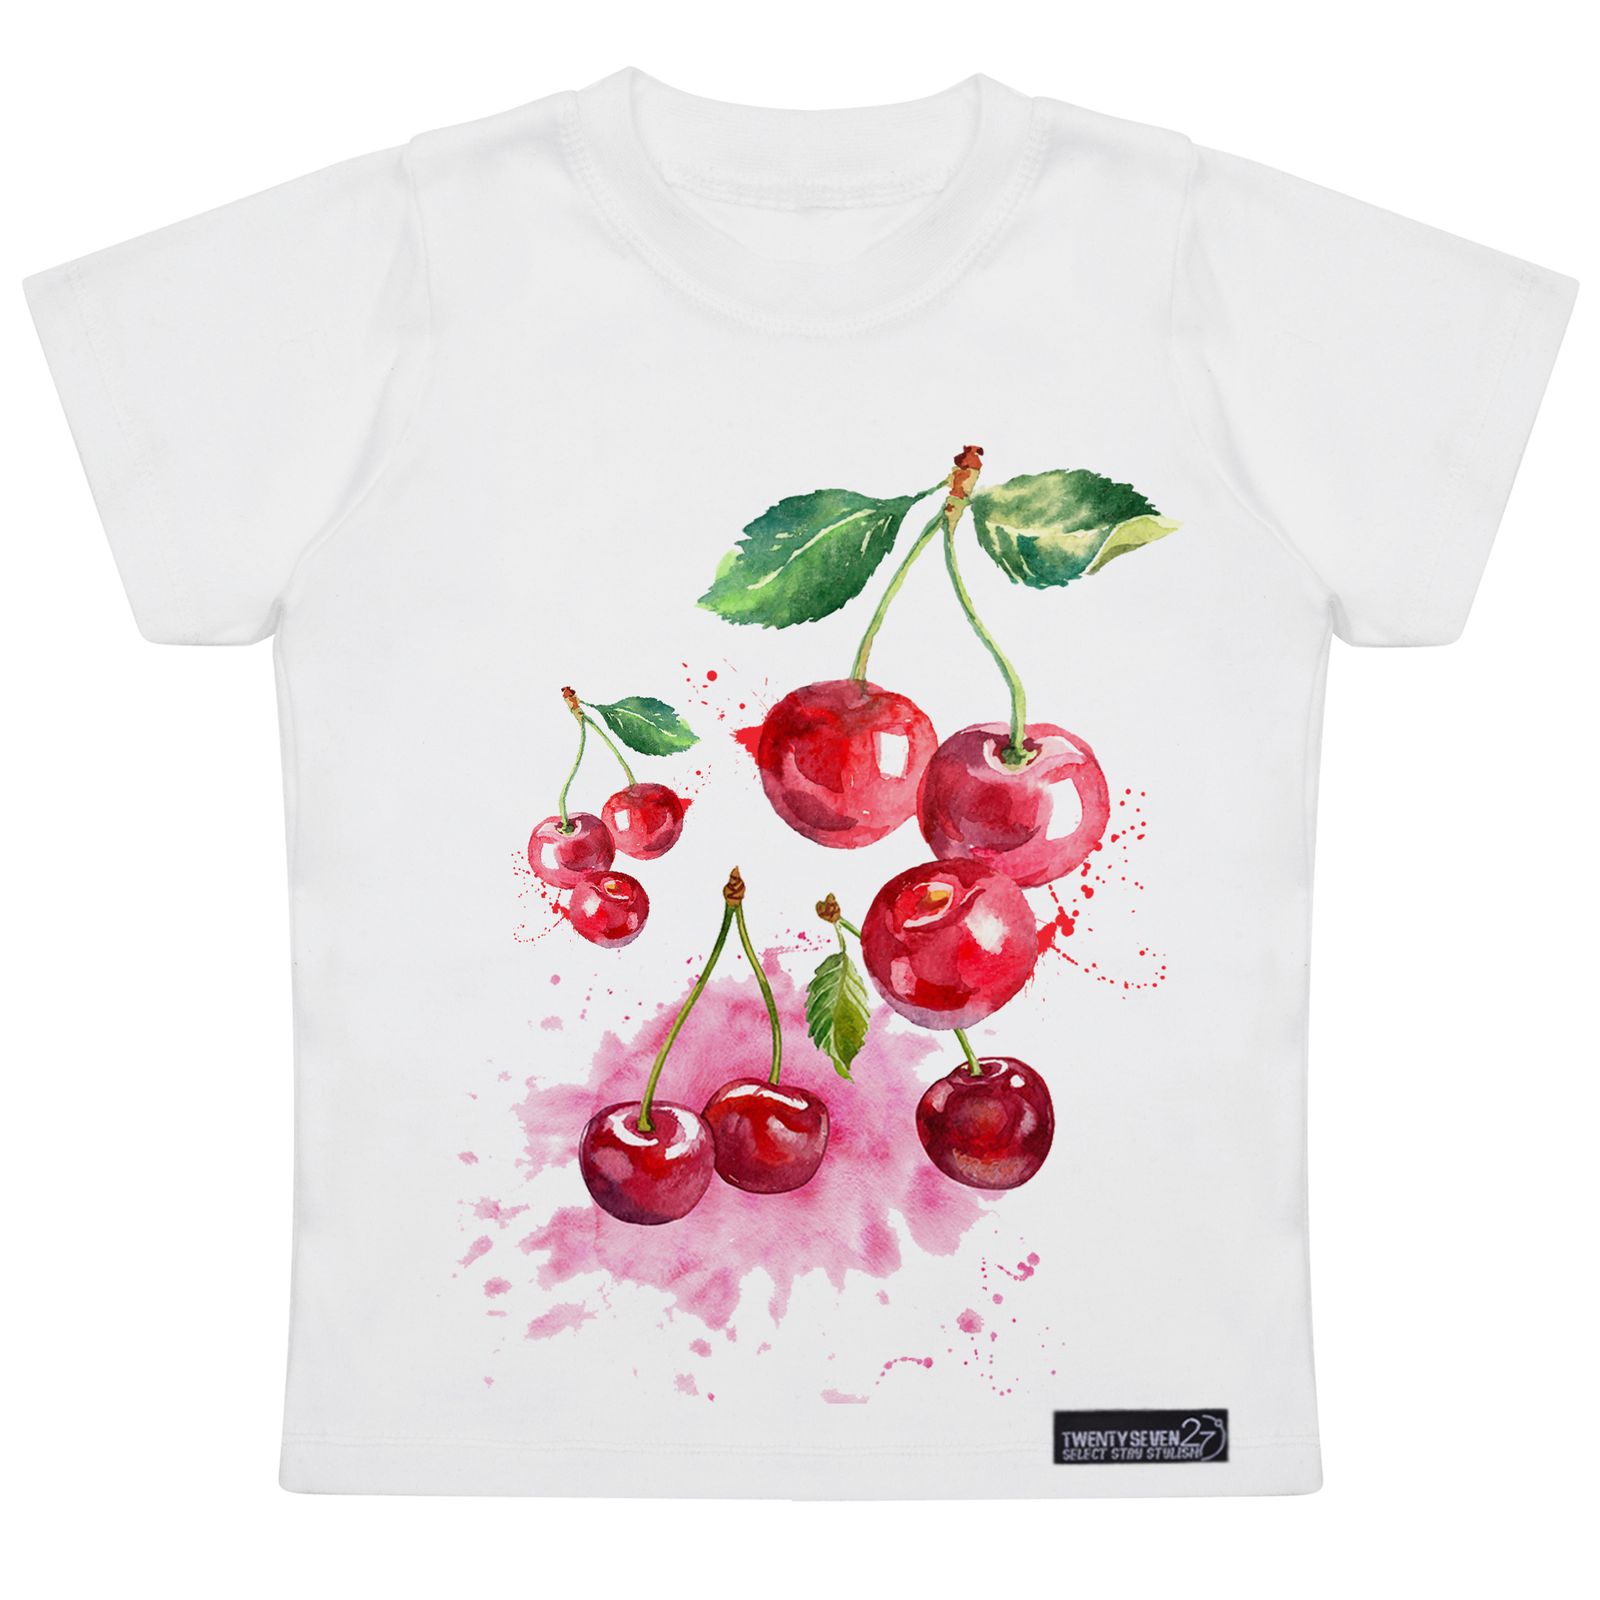 تی شرت آستین کوتاه دخترانه 27 مدل Red Cherries کد MH957 -  - 4